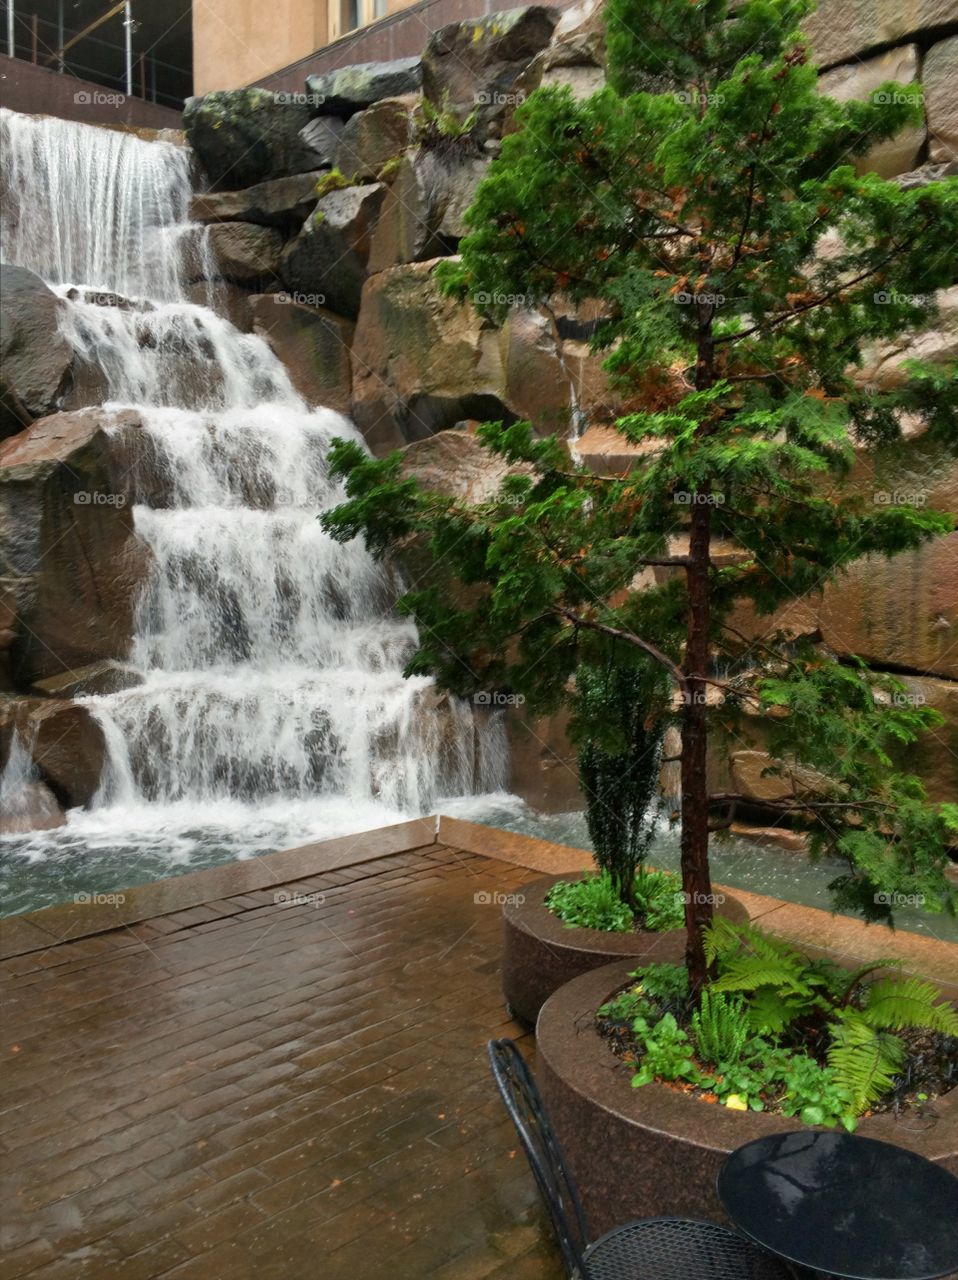 "Waterfall Garden"